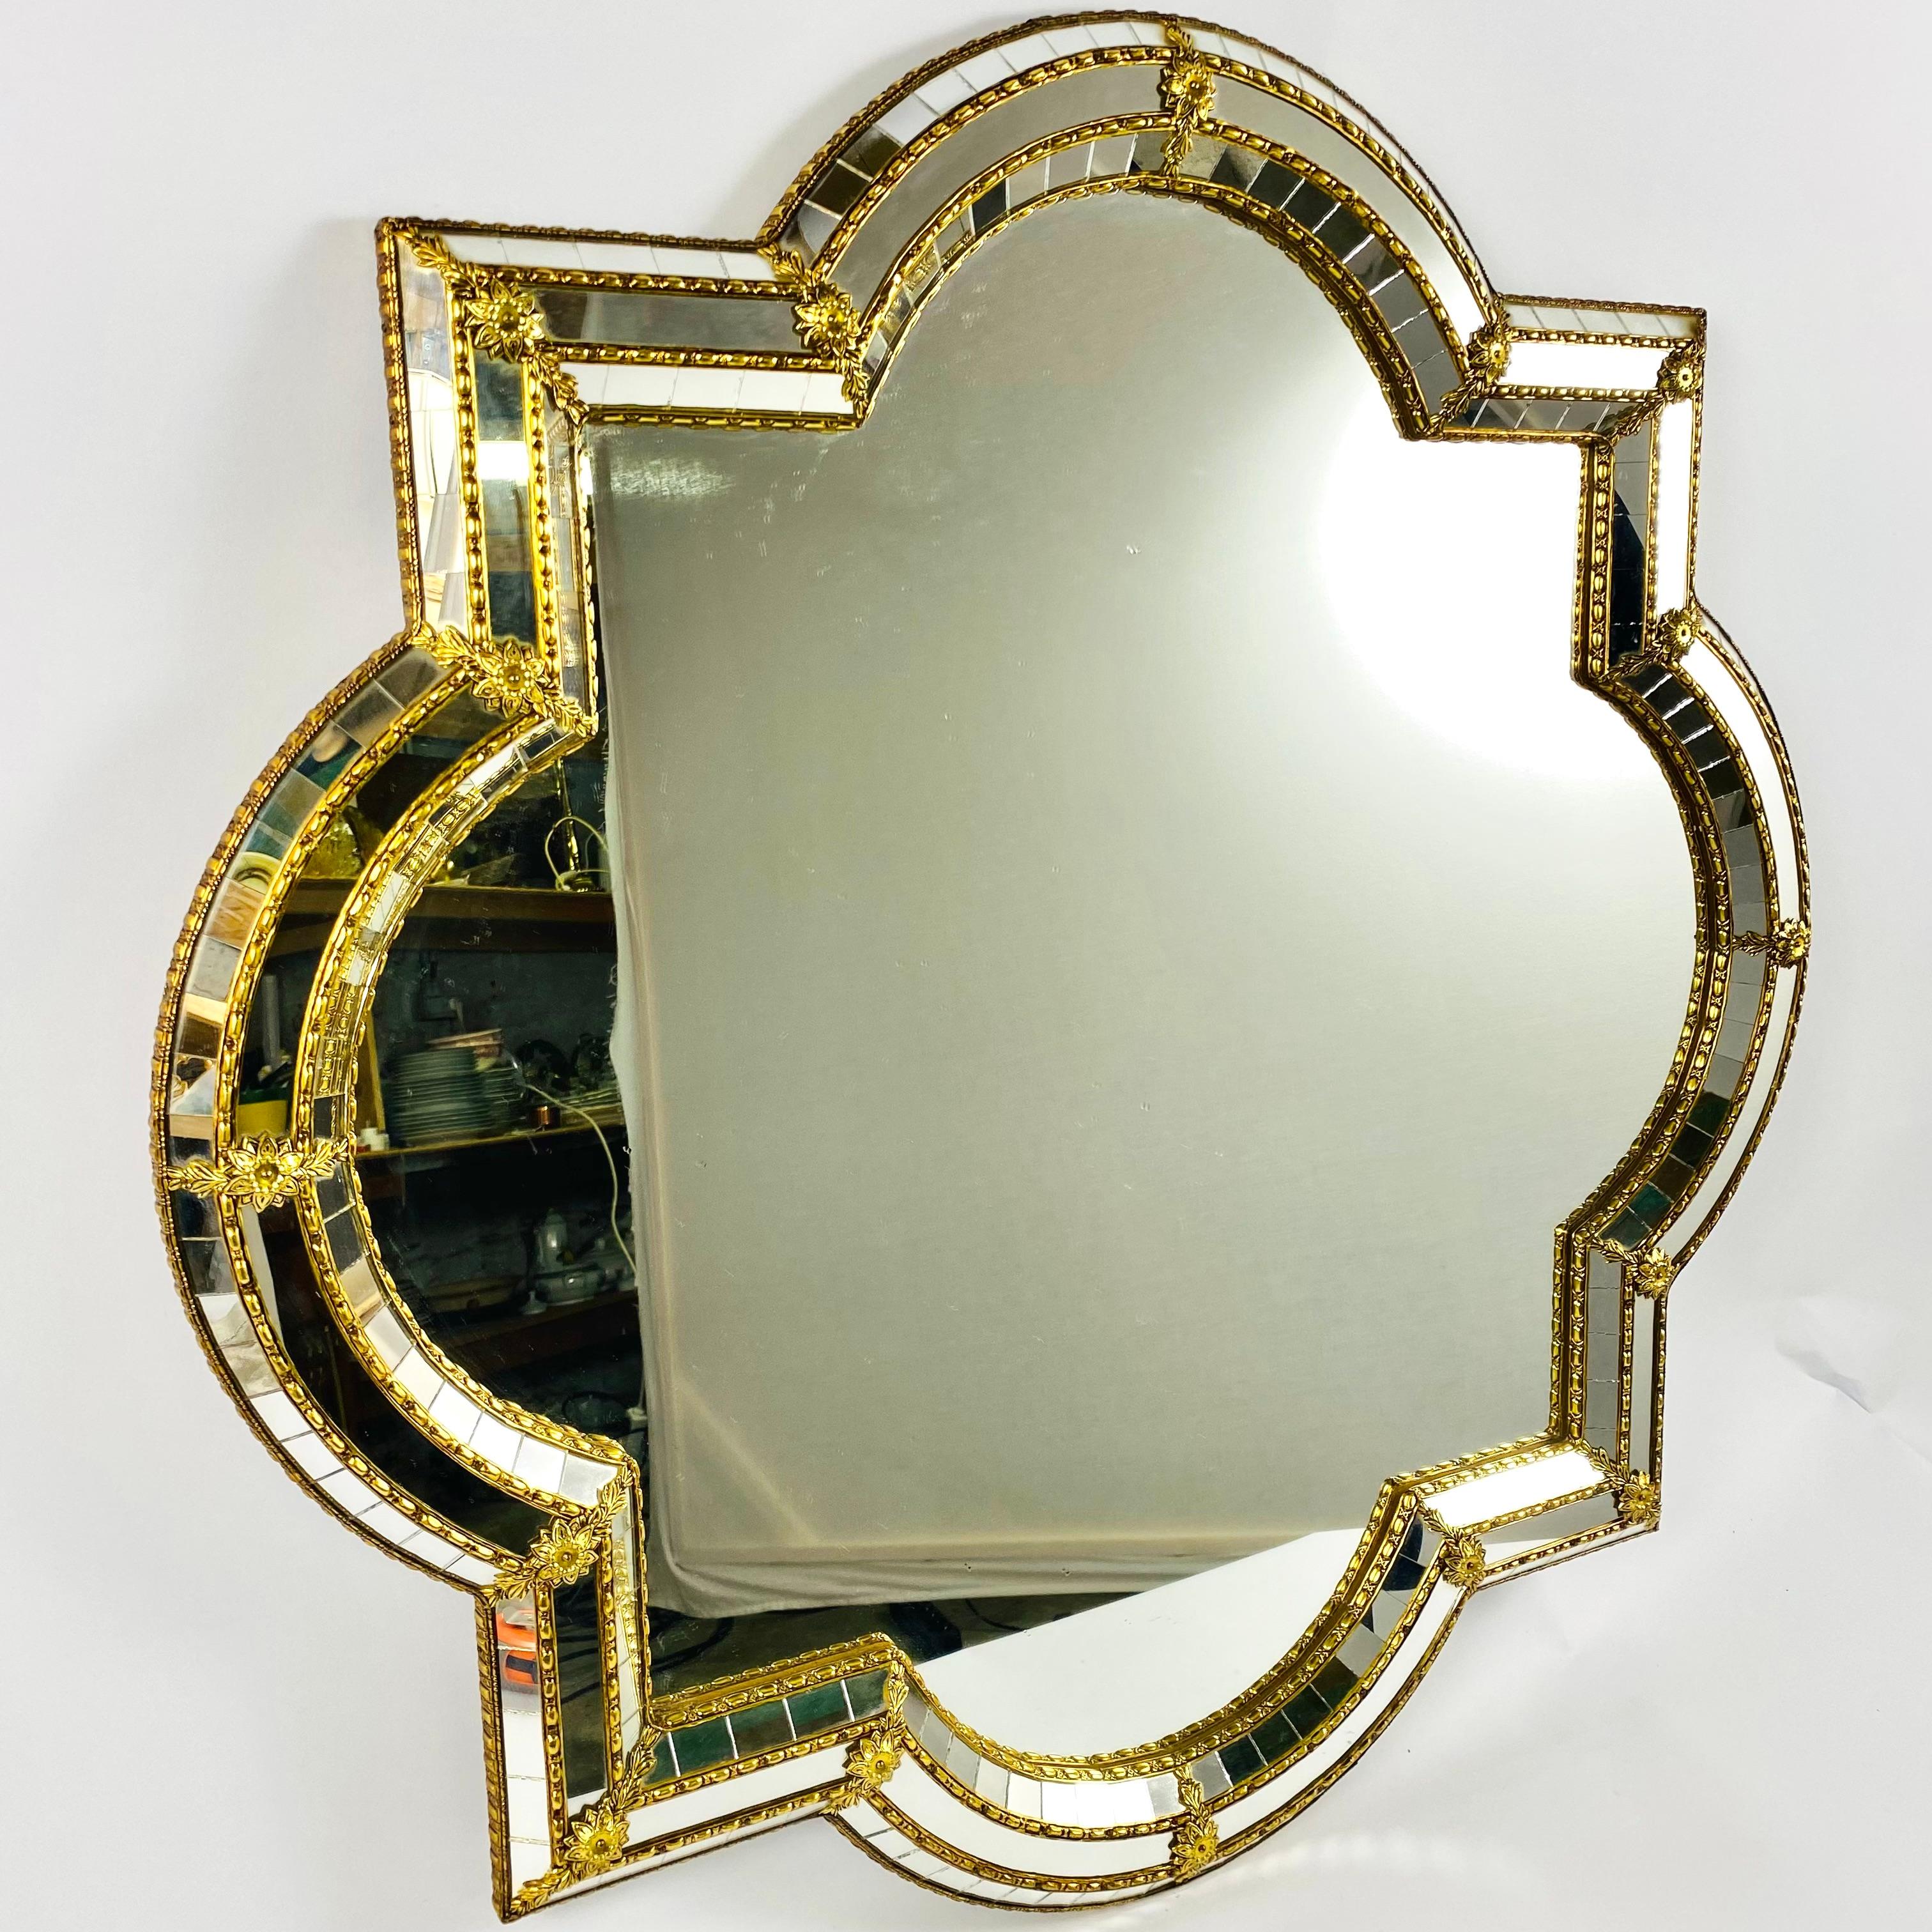 Schöner handgefertigter venezianischer ovaler / quadratischer Spiegel aus Italien, Florenz 1970er Jahre.

Der Rahmen hat über die gesamte Breite geschliffene Glasscheiben, die durch eine Messingleiste zusammengehalten werden.

Der trapezförmige